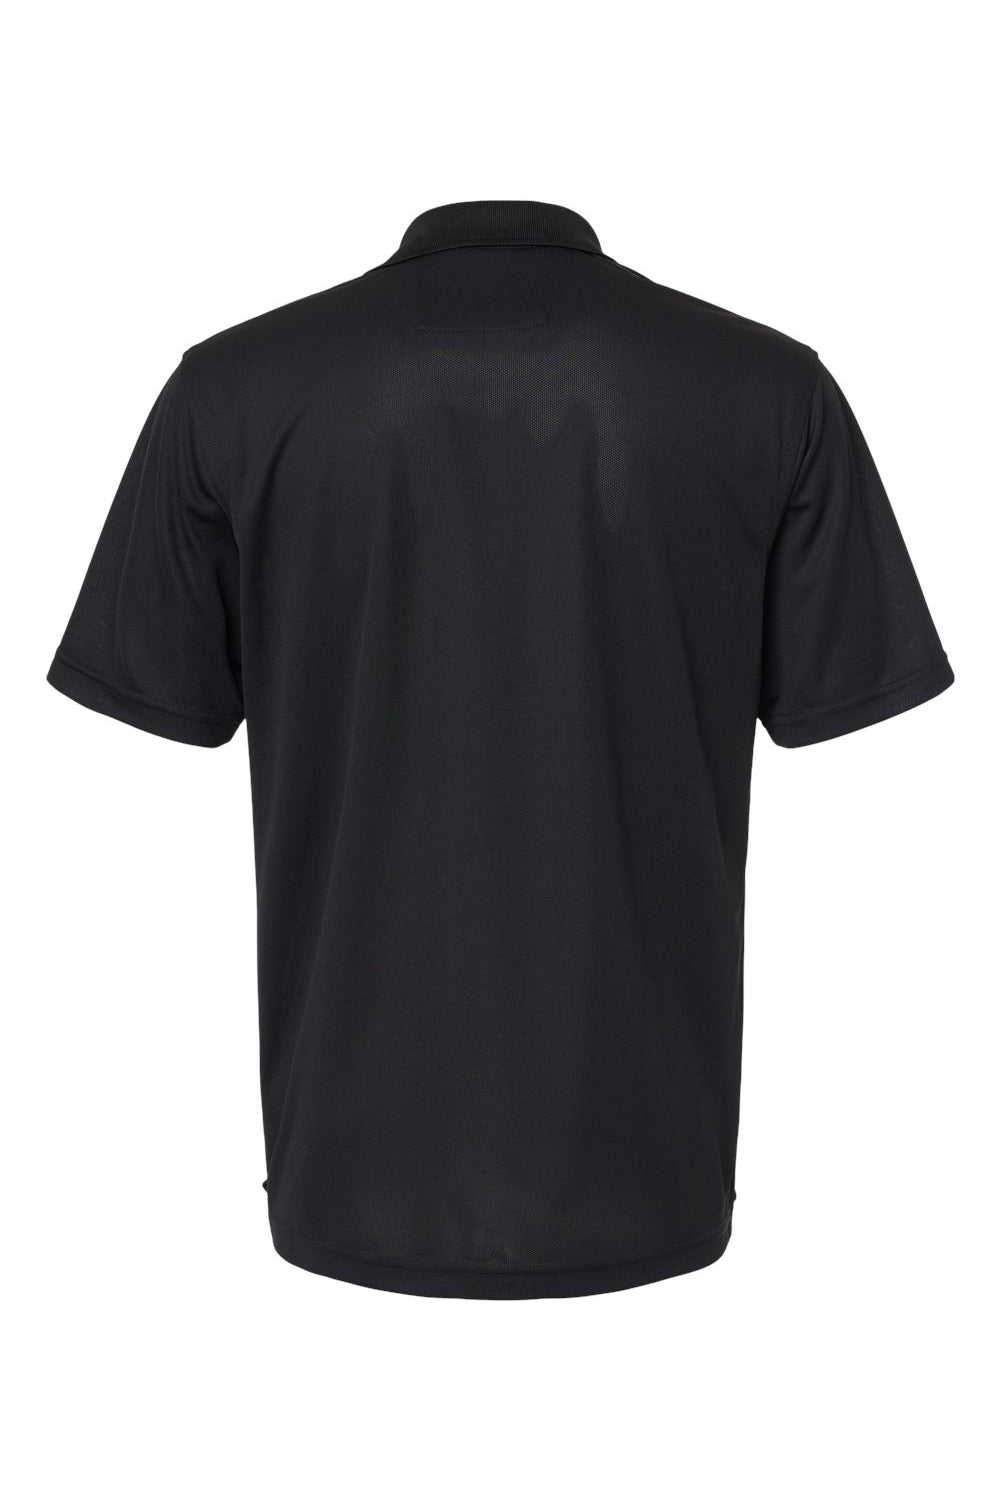 Paragon 100 Mens Saratoga Performance Mini Mesh Short Sleeve Polo Shirt Black Flat Back